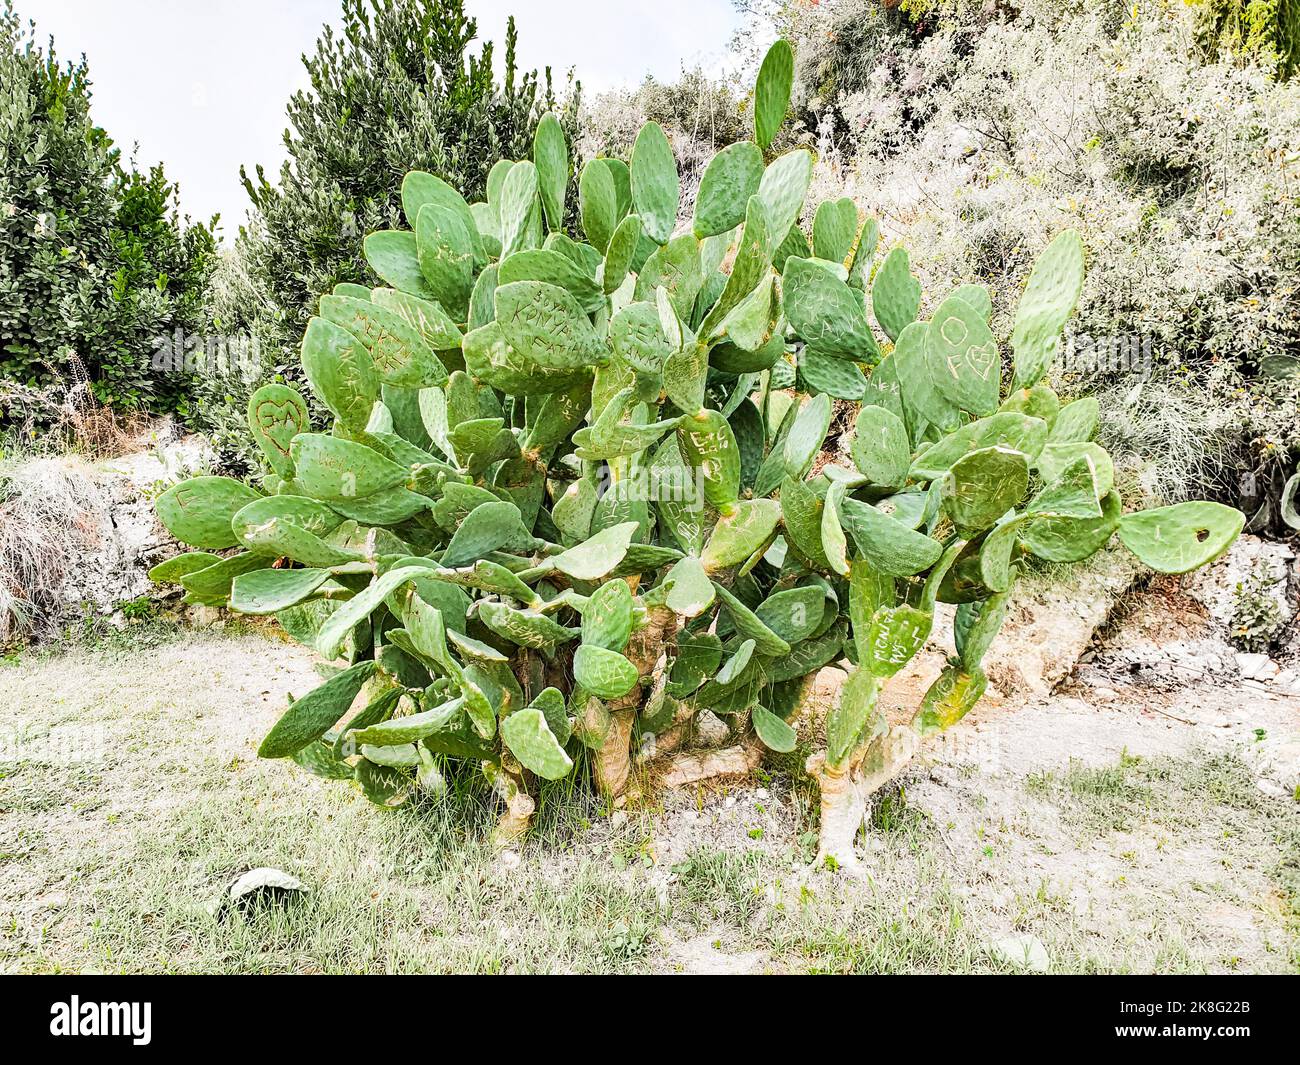 Ein riesiger Kaktus aus stacheliger Birne, der zwischen Bäumen wächst. Kaktusblätter werden durch Vandalzeichen entstellt. Stockfoto